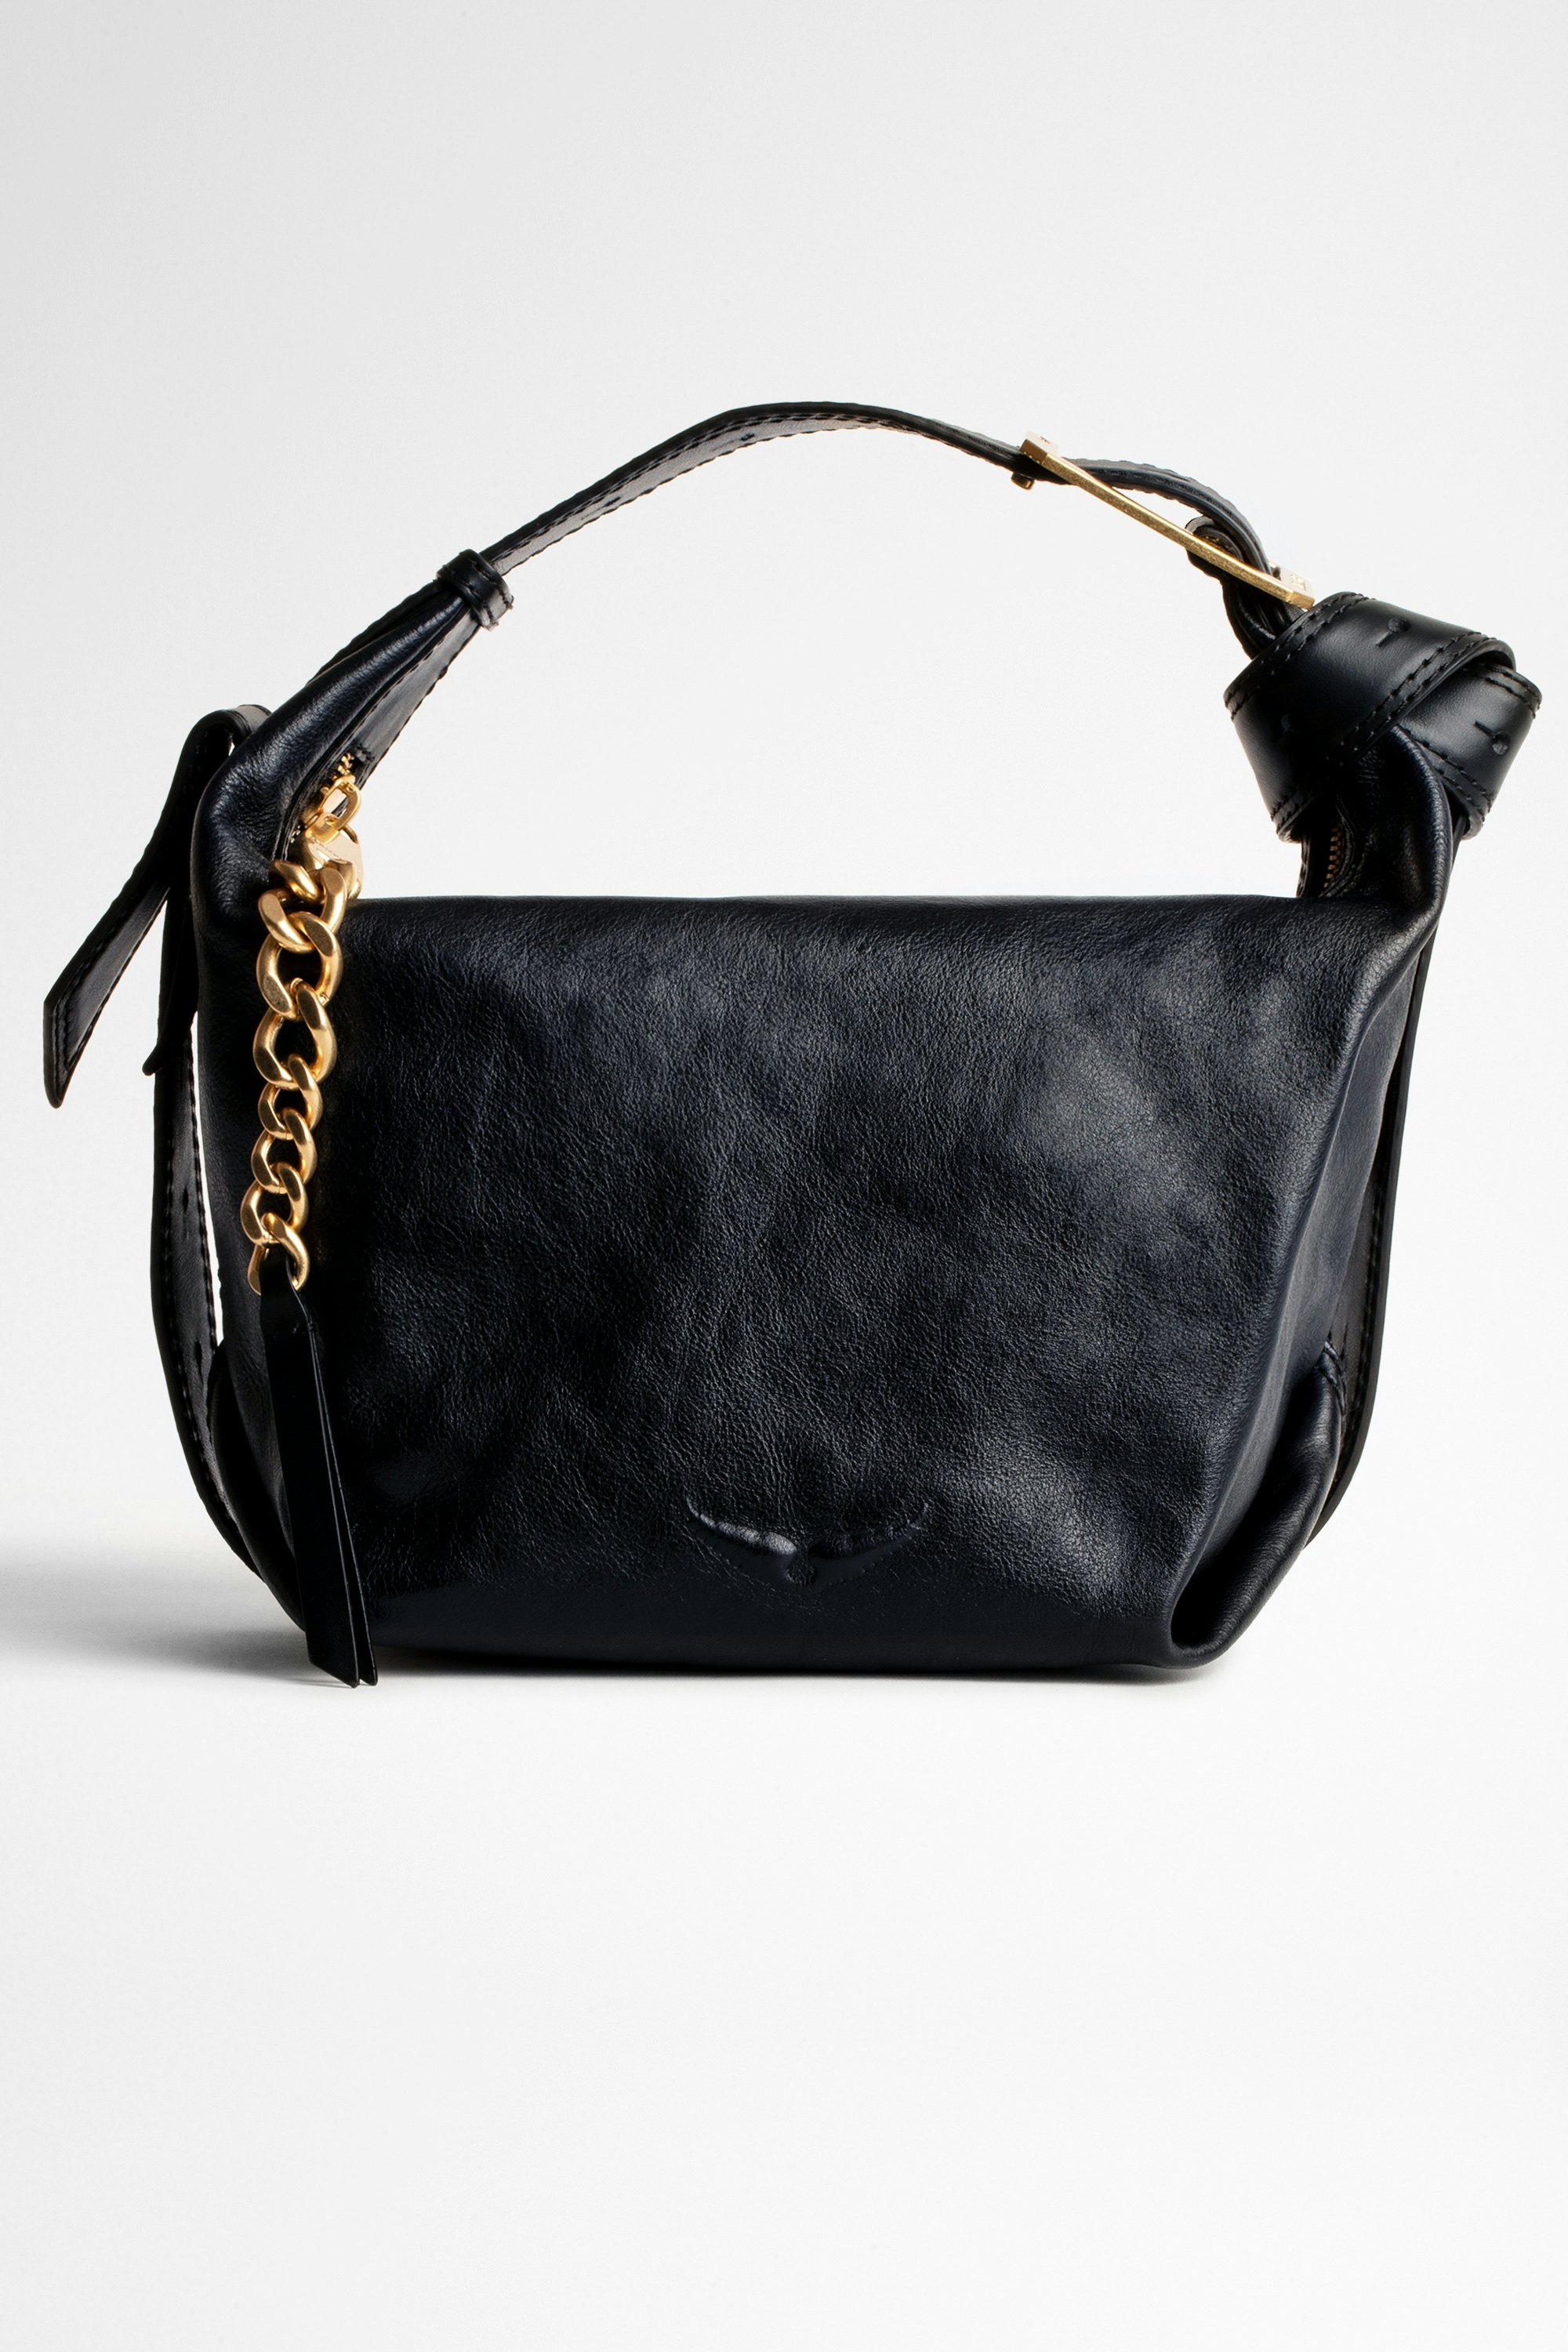 Handtasche Le Cecilia  Damentasche aus navyfarbenem Leder, an der Schulter oder crossbody zu tragen